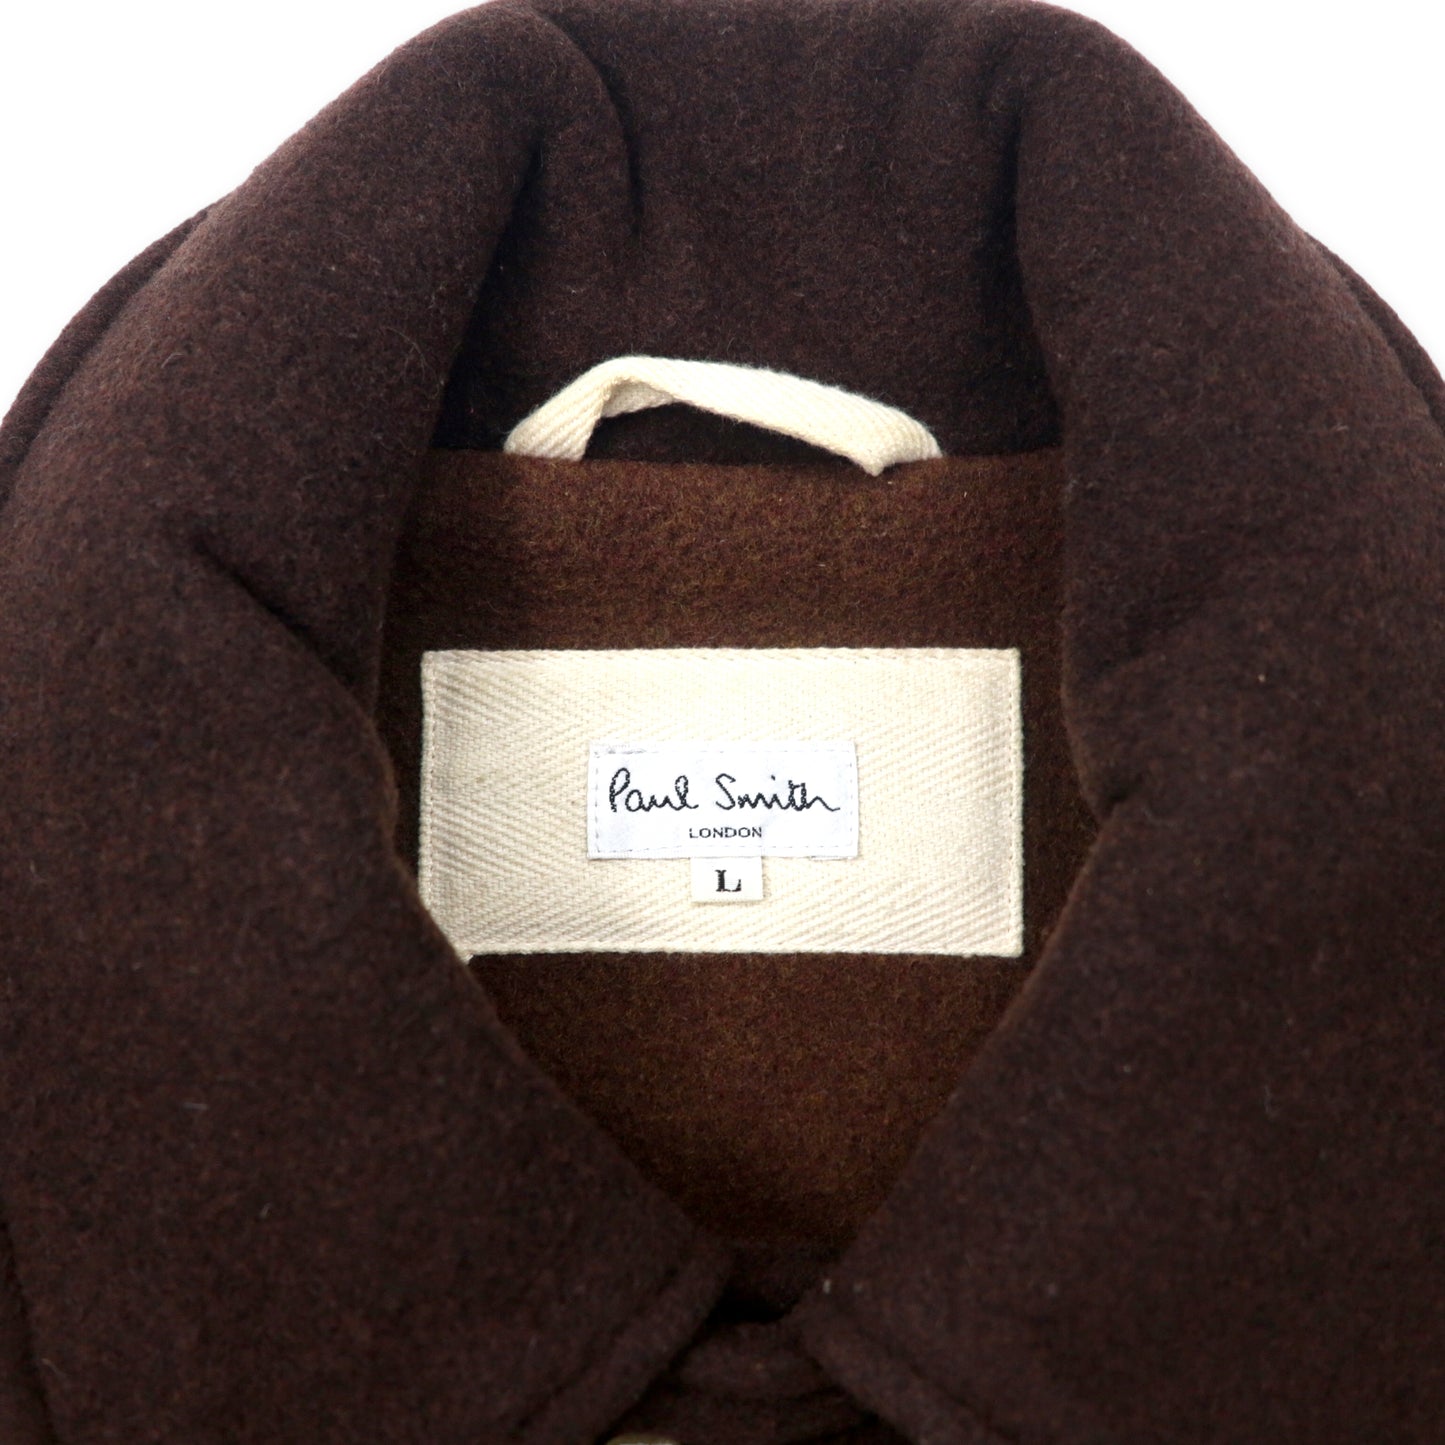 Paul Smith 90's COAT L Brown Wool Hoodie Detachable Japan Made